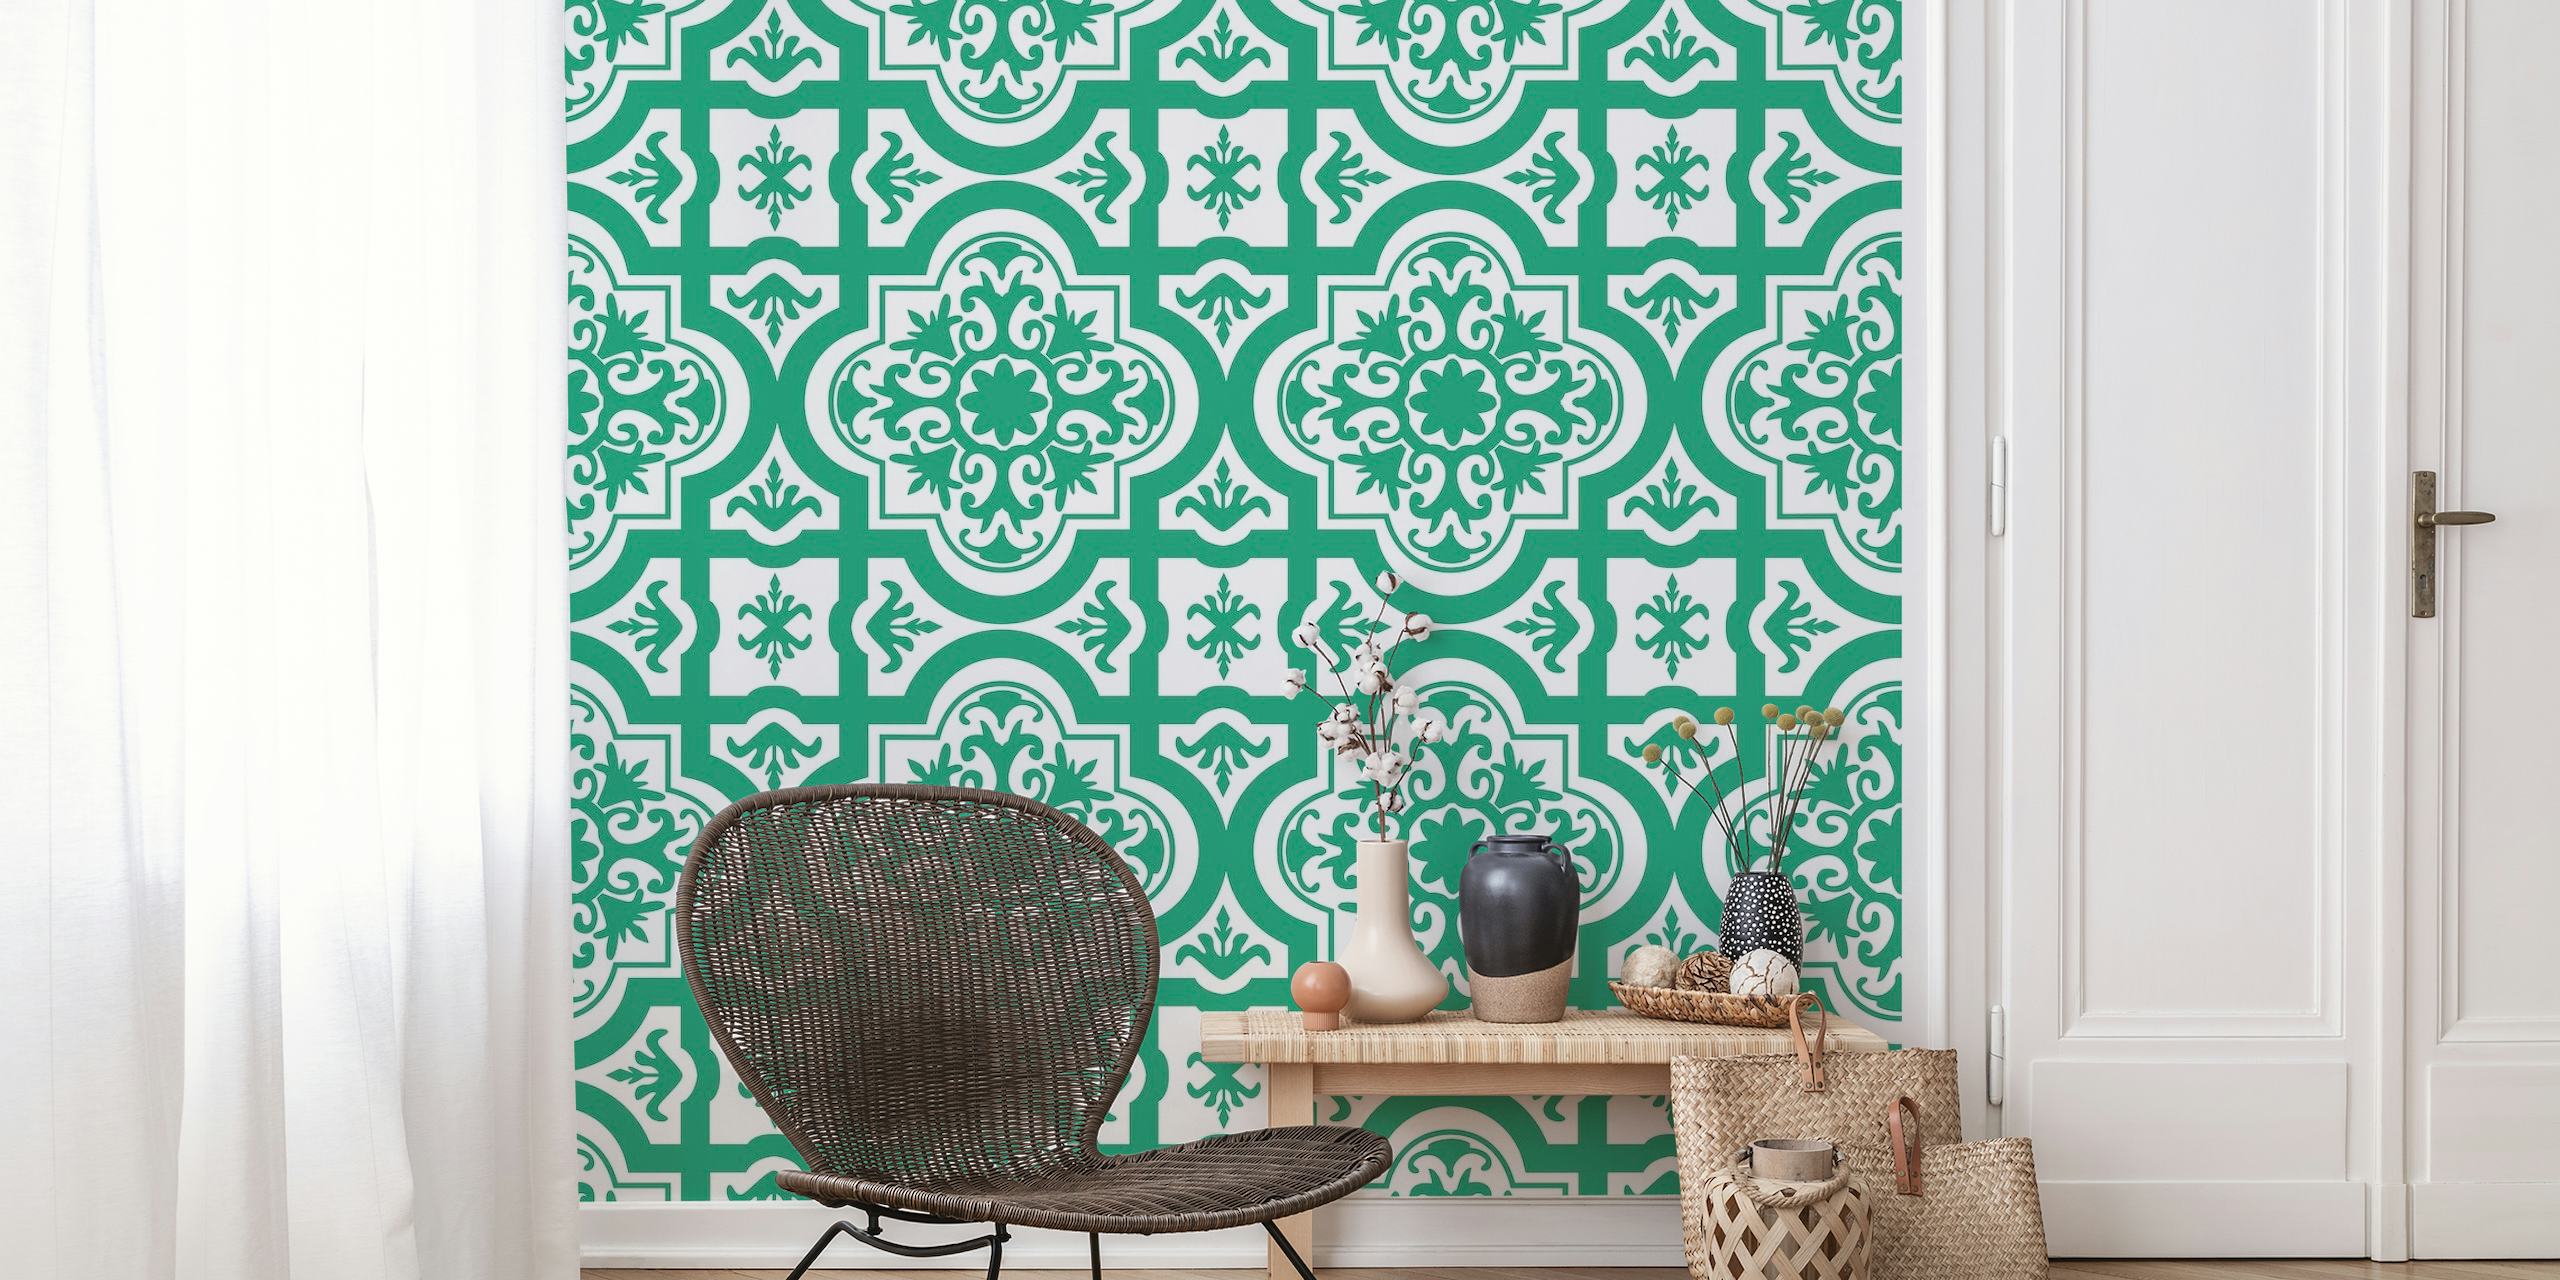 Tyrkisk grønt og hvidt udsmykket vægmaleri